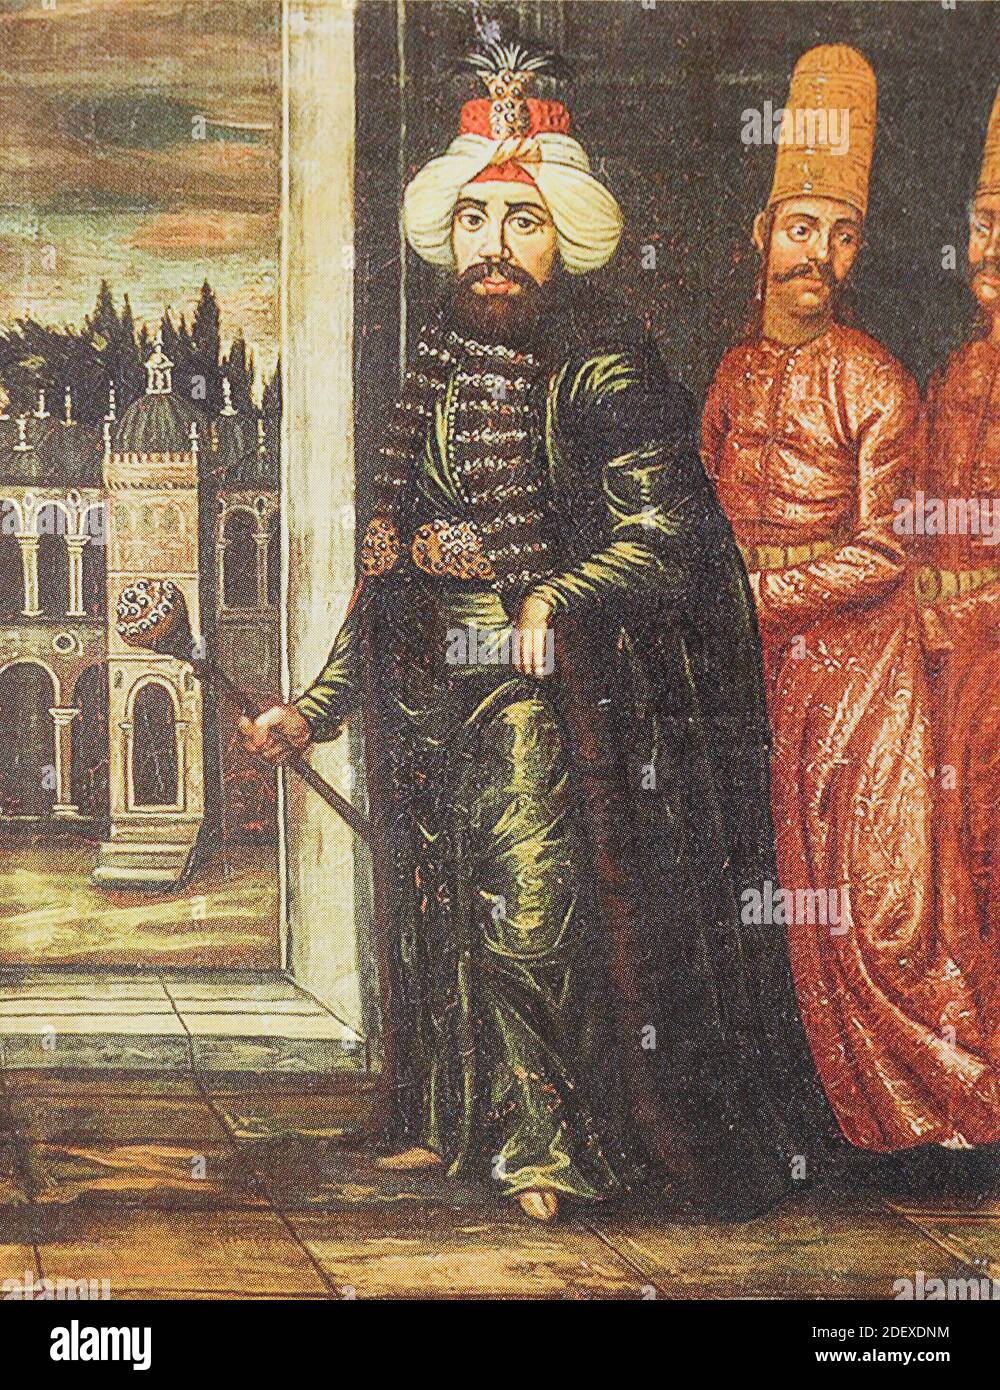 Ritratto del sultano dell'Impero Ottomano Ahmed III (30 dicembre 1673 – 1 luglio 1736). Turco in miniatura. Ahmed III era Sultano dell'Impero Ottomano e figlio del sultano Mehmed IV (r. 1648–87). Sua madre era Gülnuş Sultan, originariamente chiamata Evmenia voRia, che era un greco etnico. Nacque a Hacıoğlu Pazarcık, a Dobruja. Foto Stock